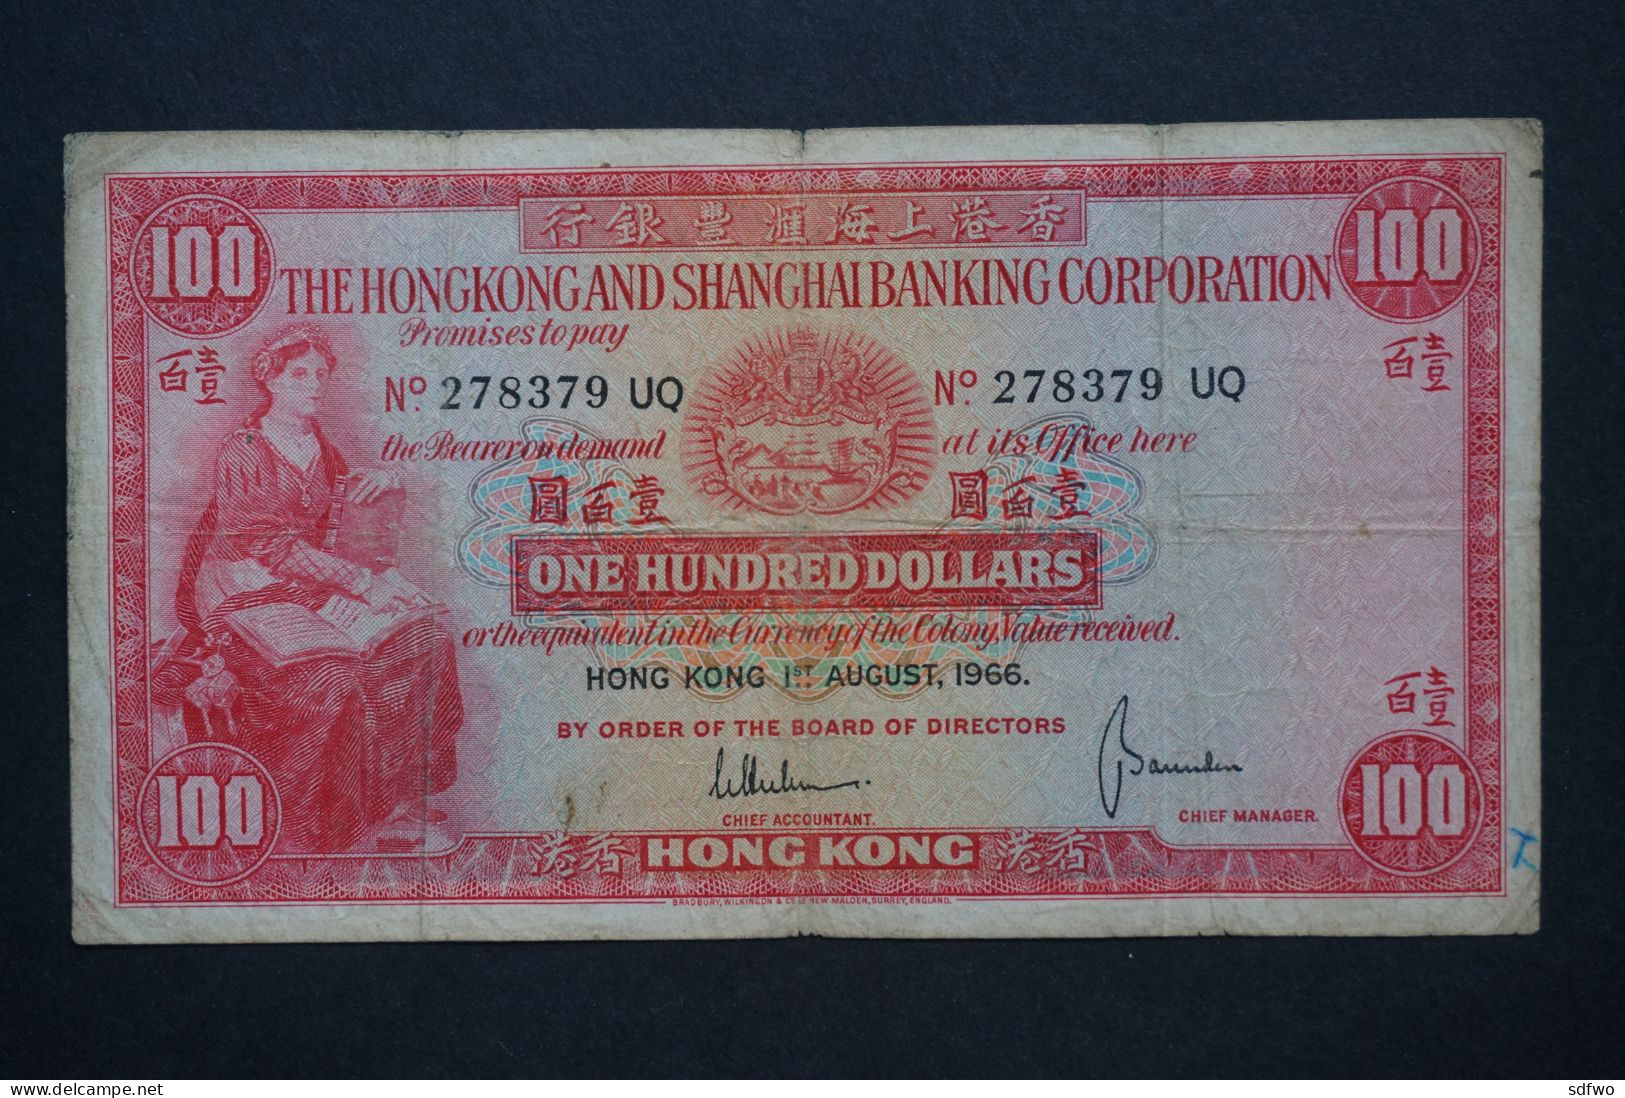 (Tv) 1966 HONG KONG OLD ISSUE - HSBC 100 DOLLARS #278379 UQ - Hongkong